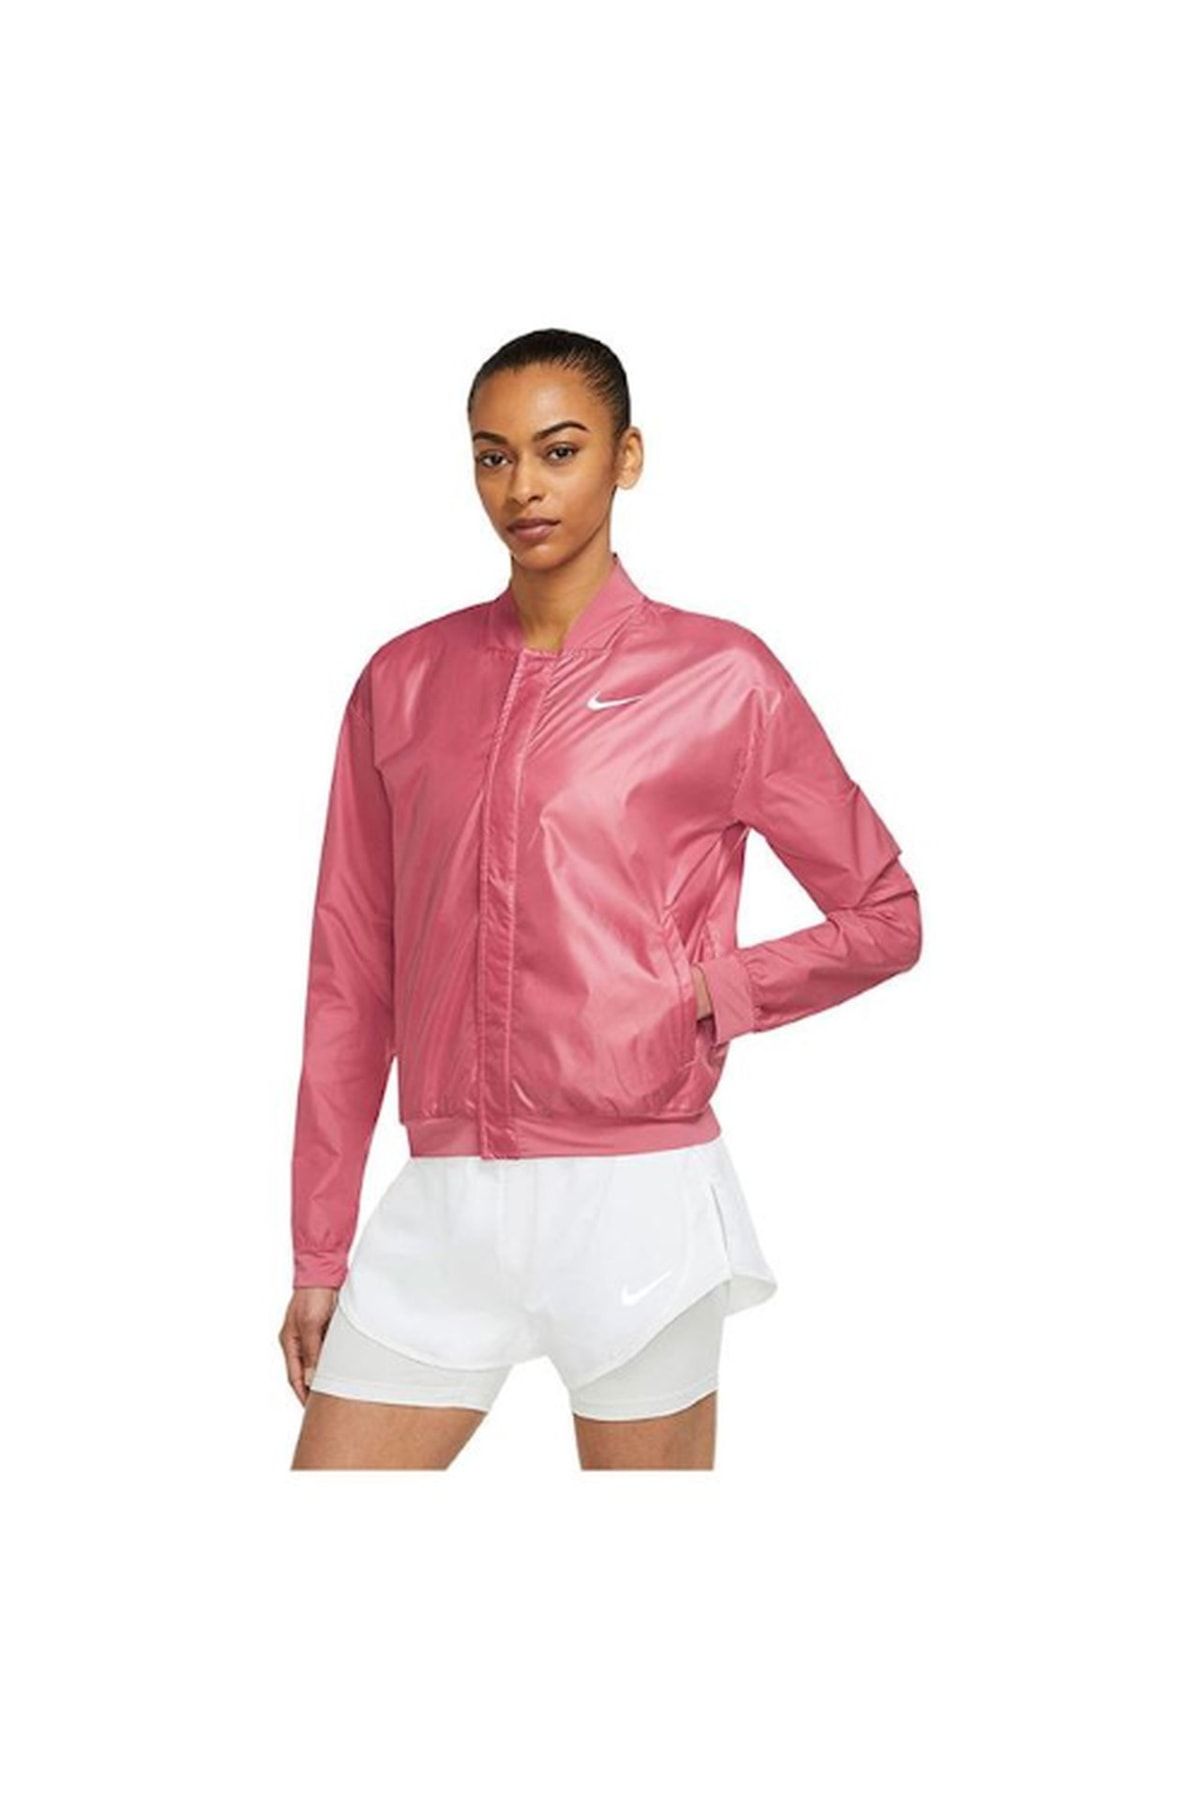 Nike Swoosh Run Ceket Kadın Koşu Ceketi - Pembe Dd6847-622